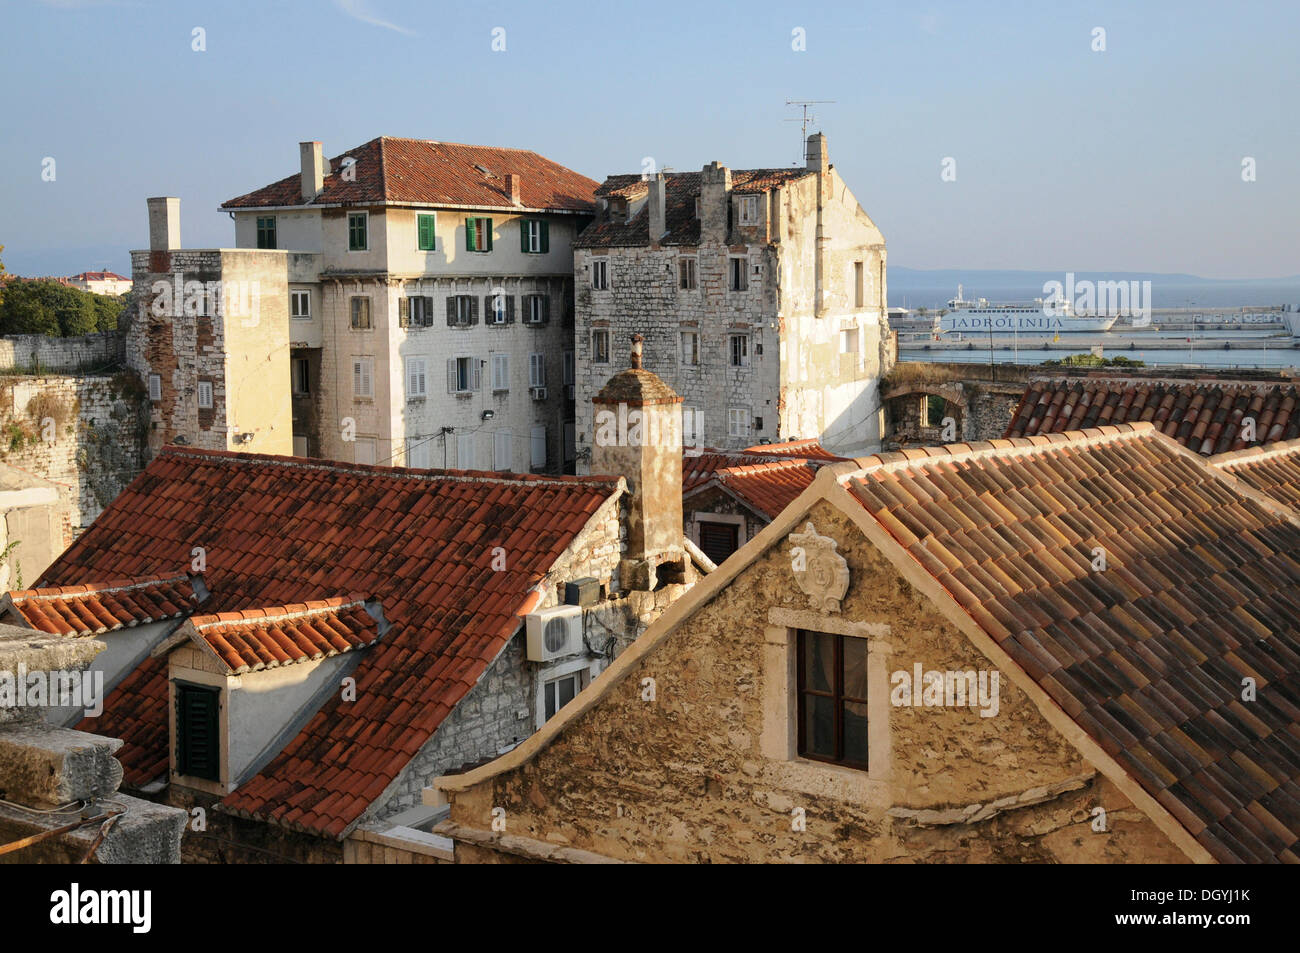 Historische Altstadt, mit Blick auf die Stadt vom Turm der Kathedrale Sveti Duje, Split, Kroatien, Europa Stockfoto